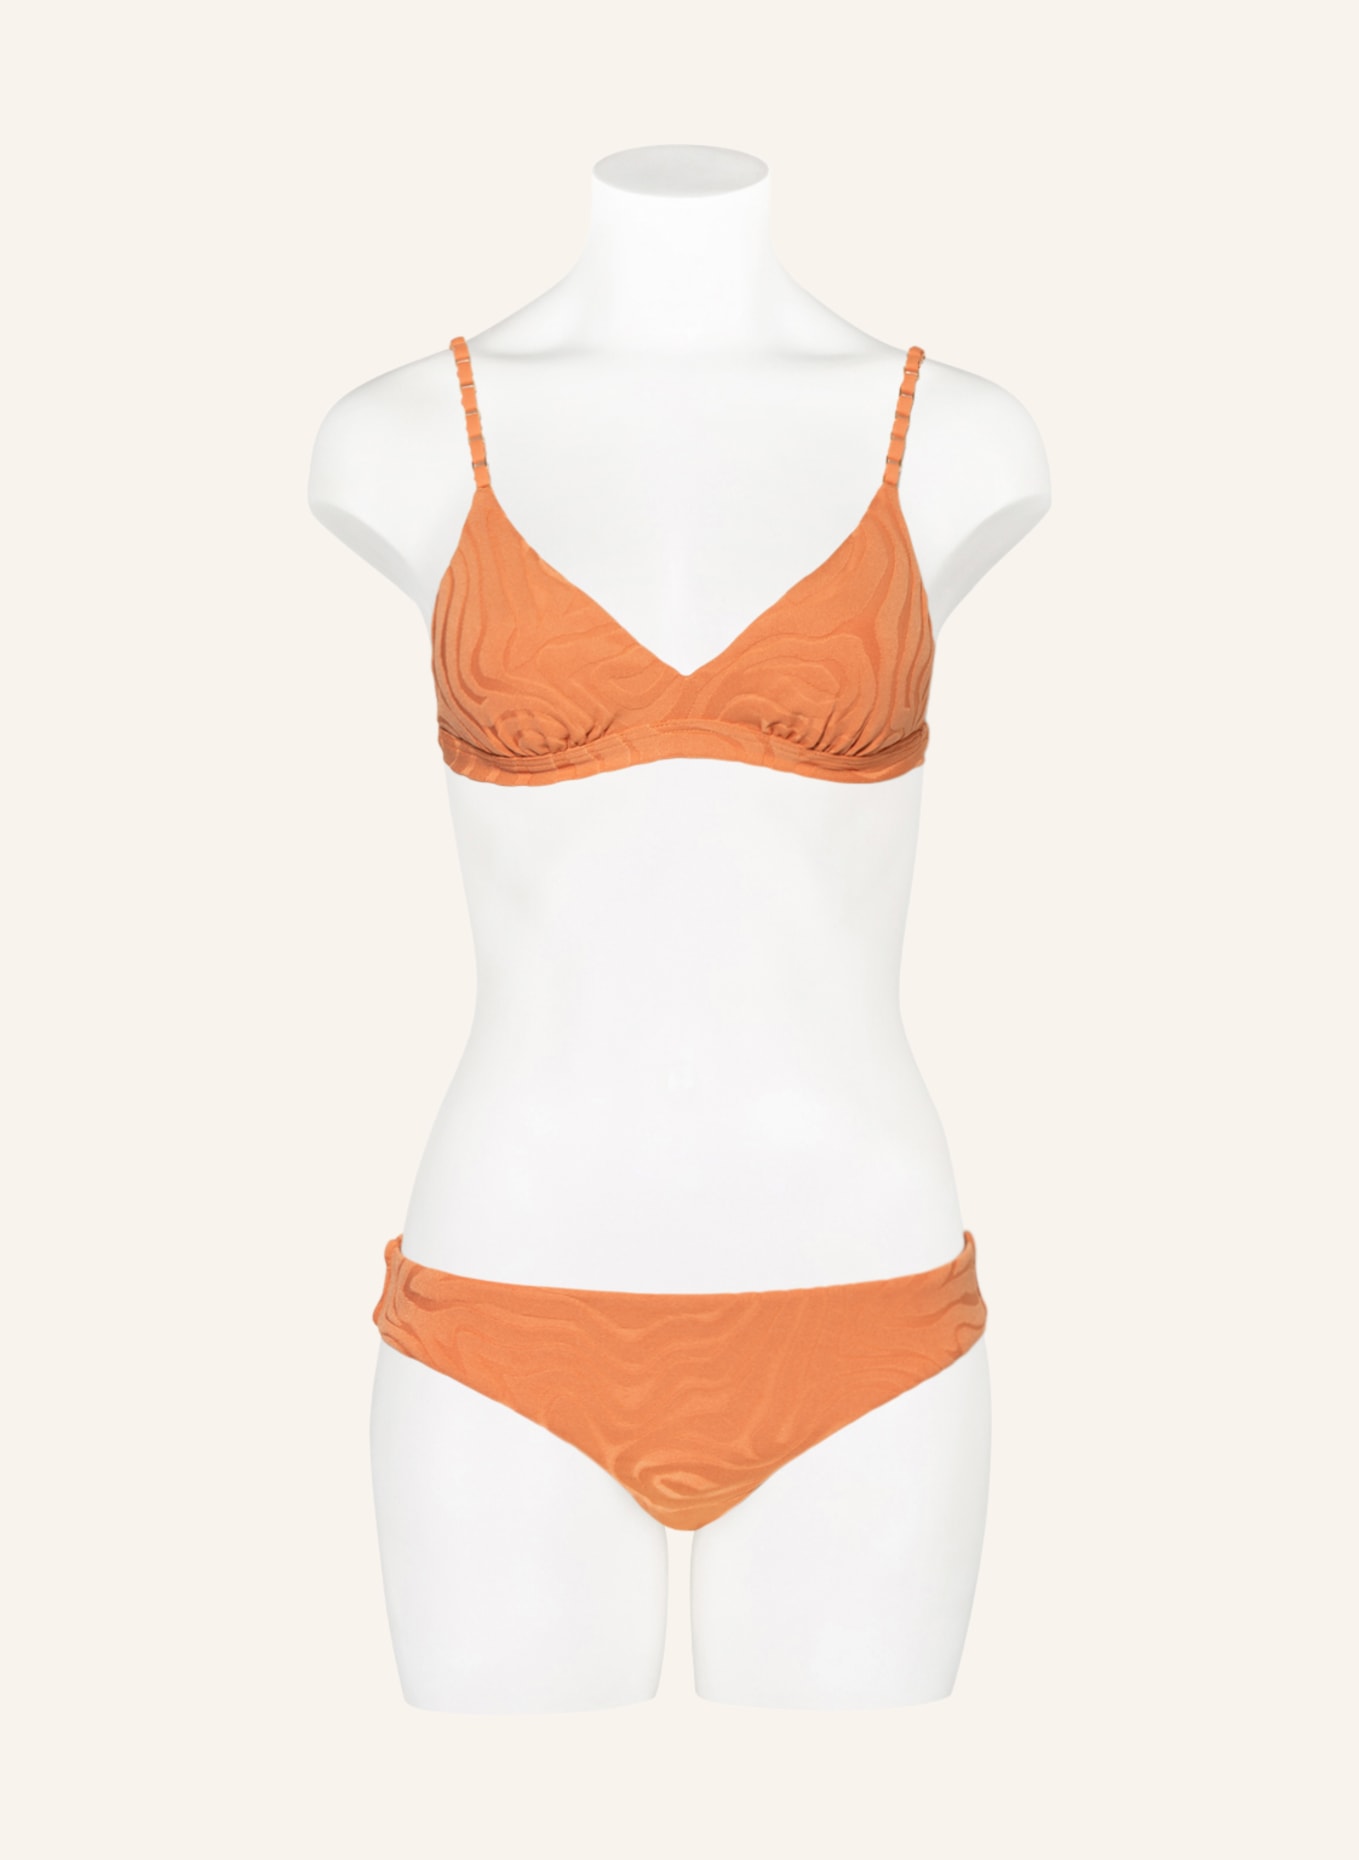 SEAFOLLY Bralette bikini top SECOND WAVE , Color: LIGHT ORANGE (Image 2)